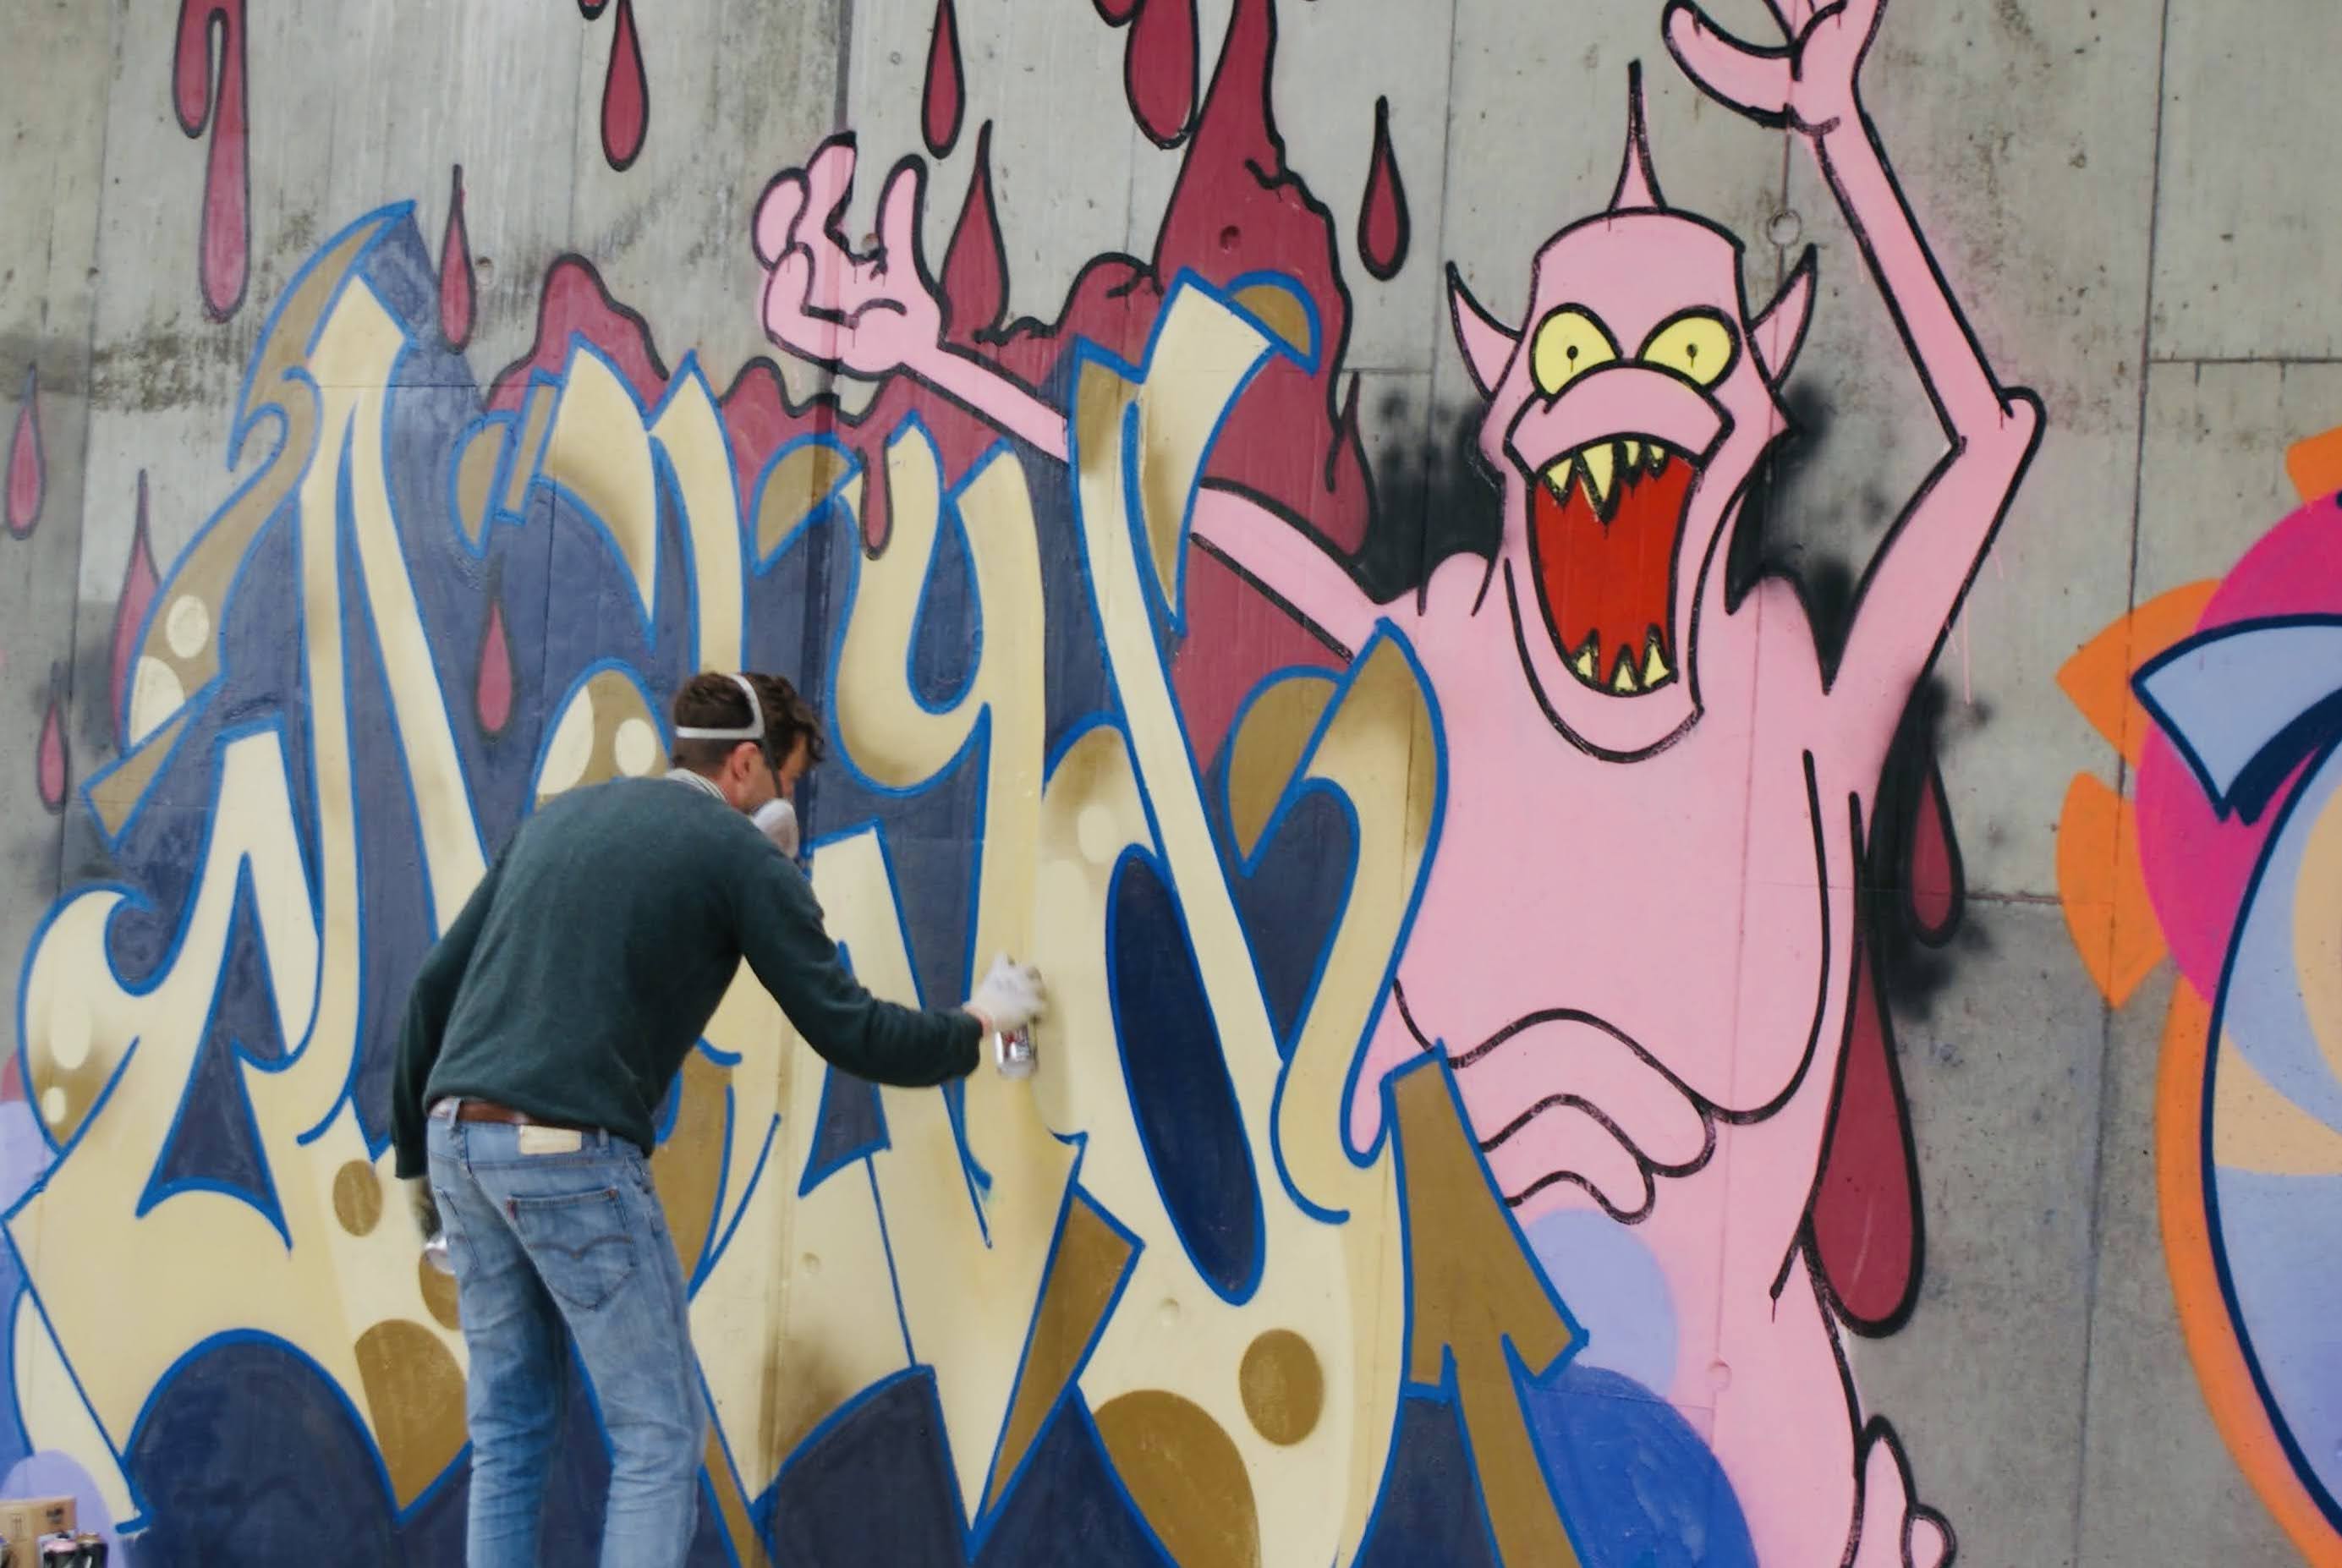 Graffiti an der HWS Wand. Rechts im Bild ein rosa Monster, welches die Arme hoch streckt. Links ein Graffiti Künstler in Jeans und dunkelgrünem Pullover sprüht einen goldgelben Schriftzug mit dunkelblauem Schatten an die graue Betonwand.